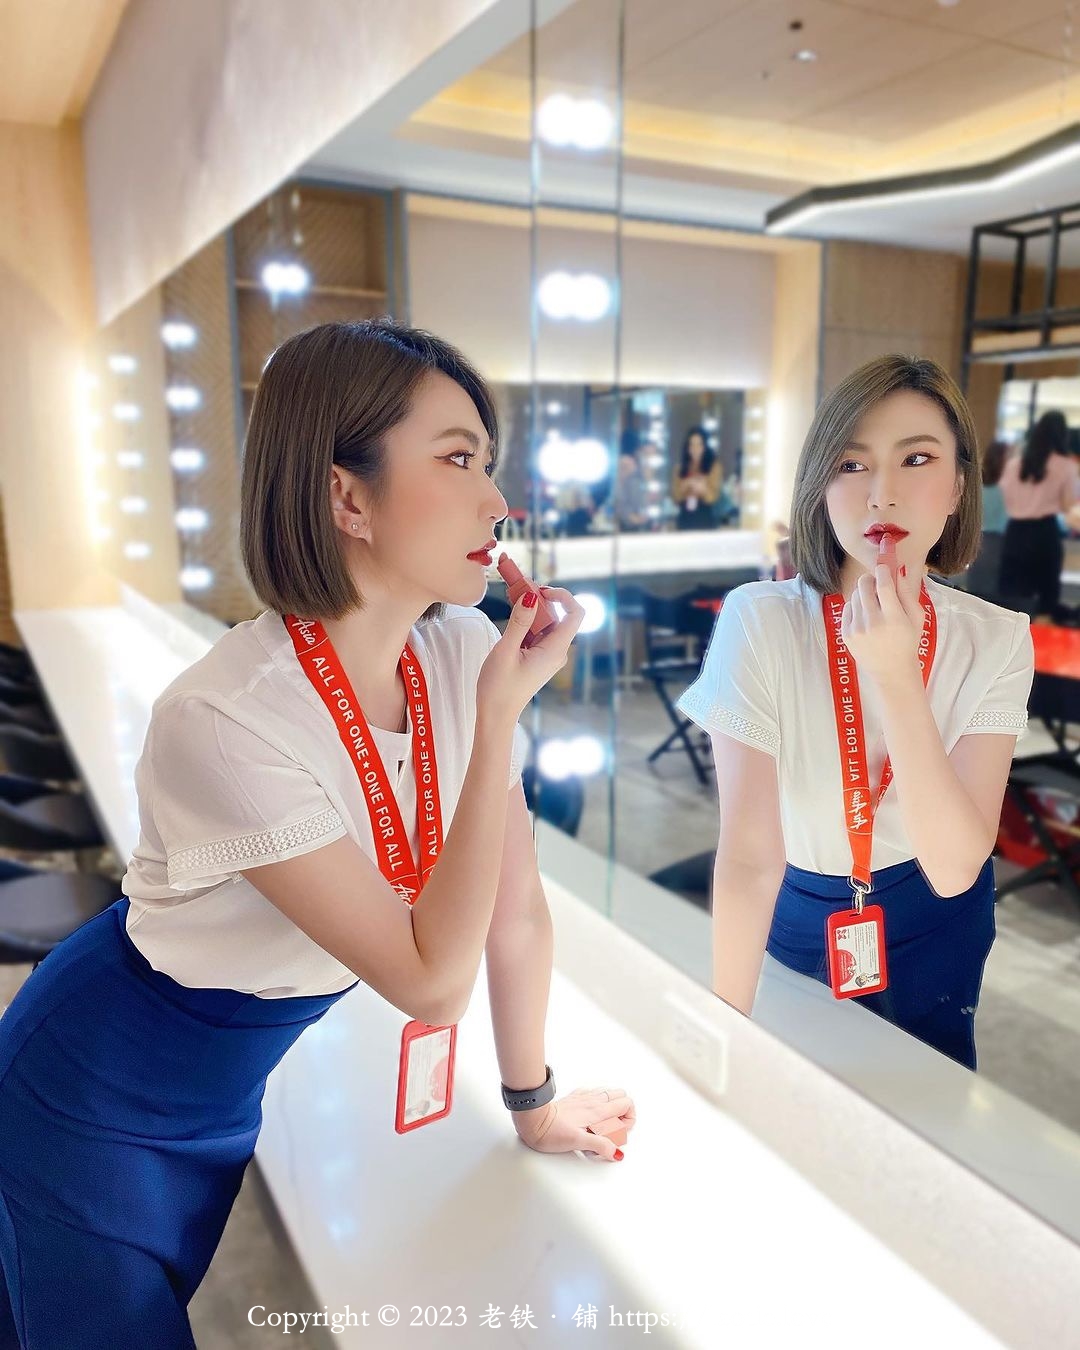 亚洲航空绝色空姐在镜子前涂抹口红